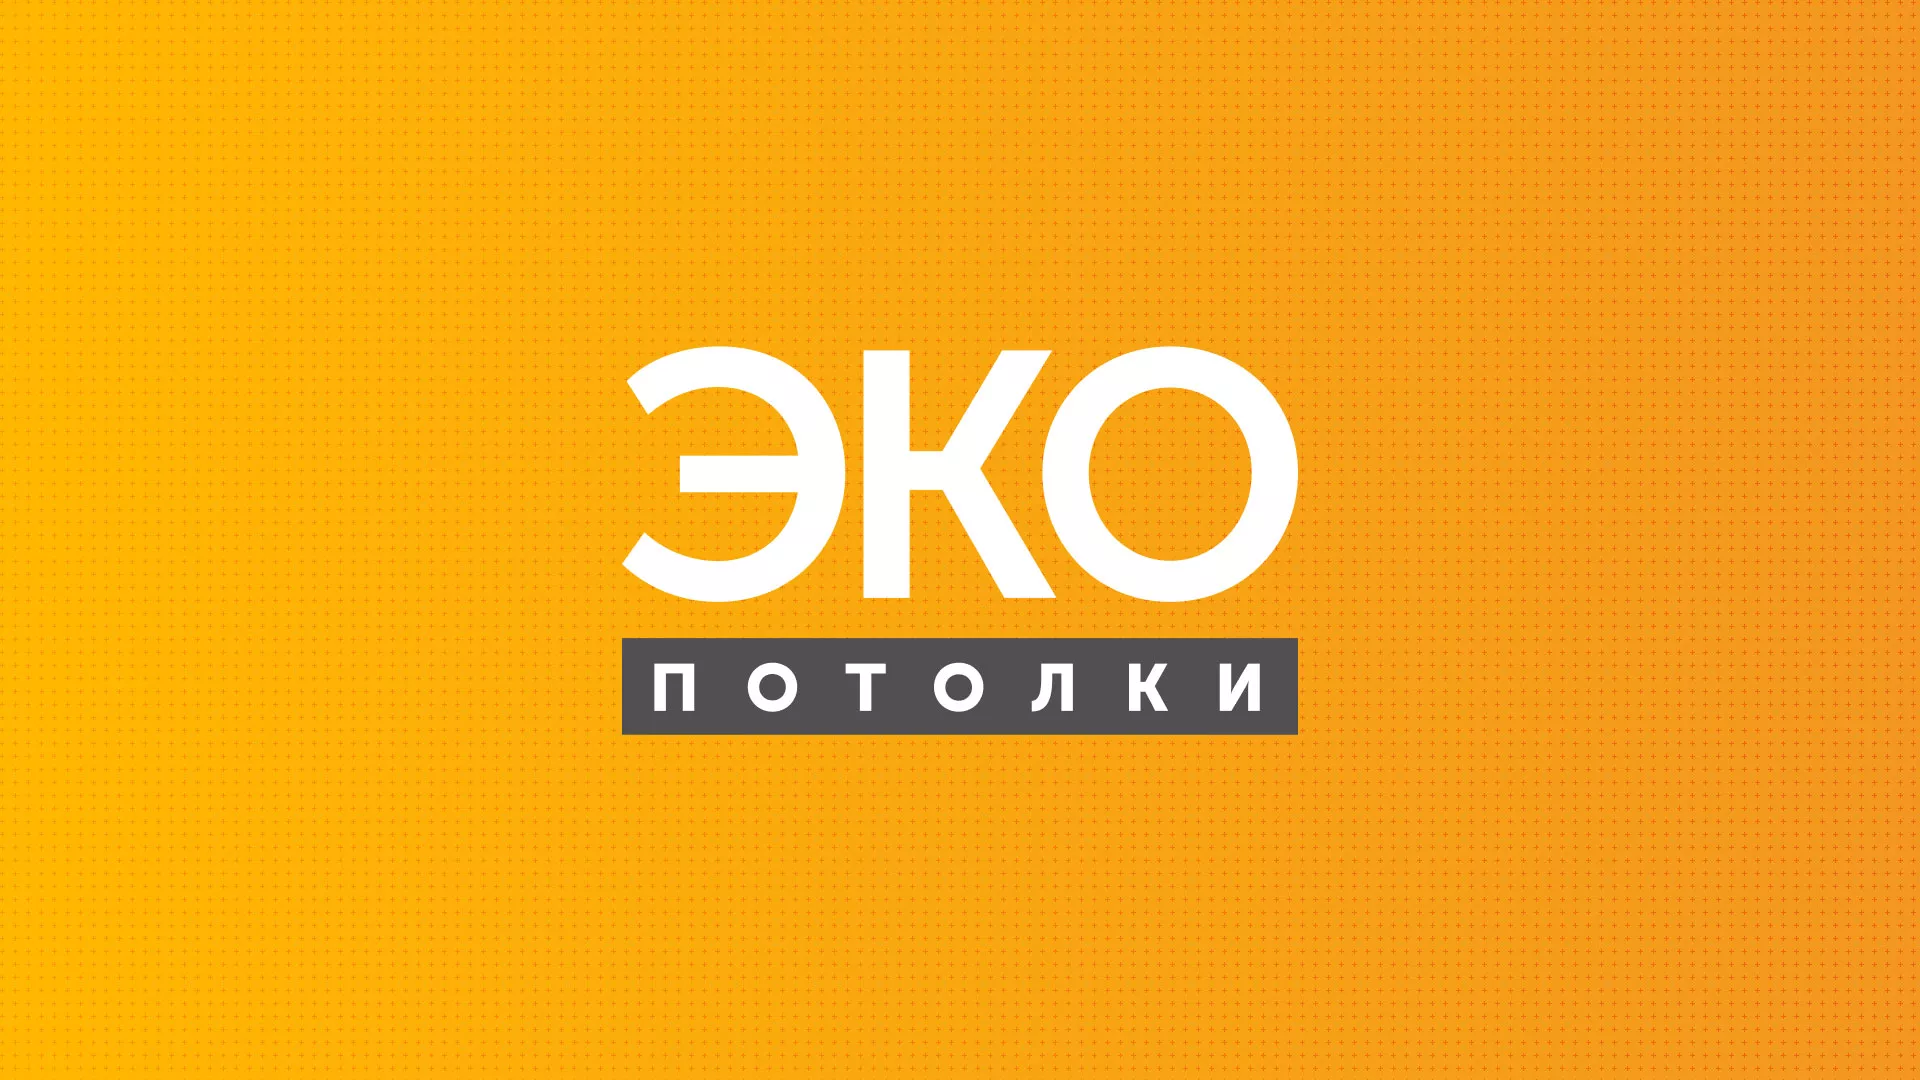 Разработка сайта по натяжным потолкам «Эко Потолки» в Усть-Каменогорске